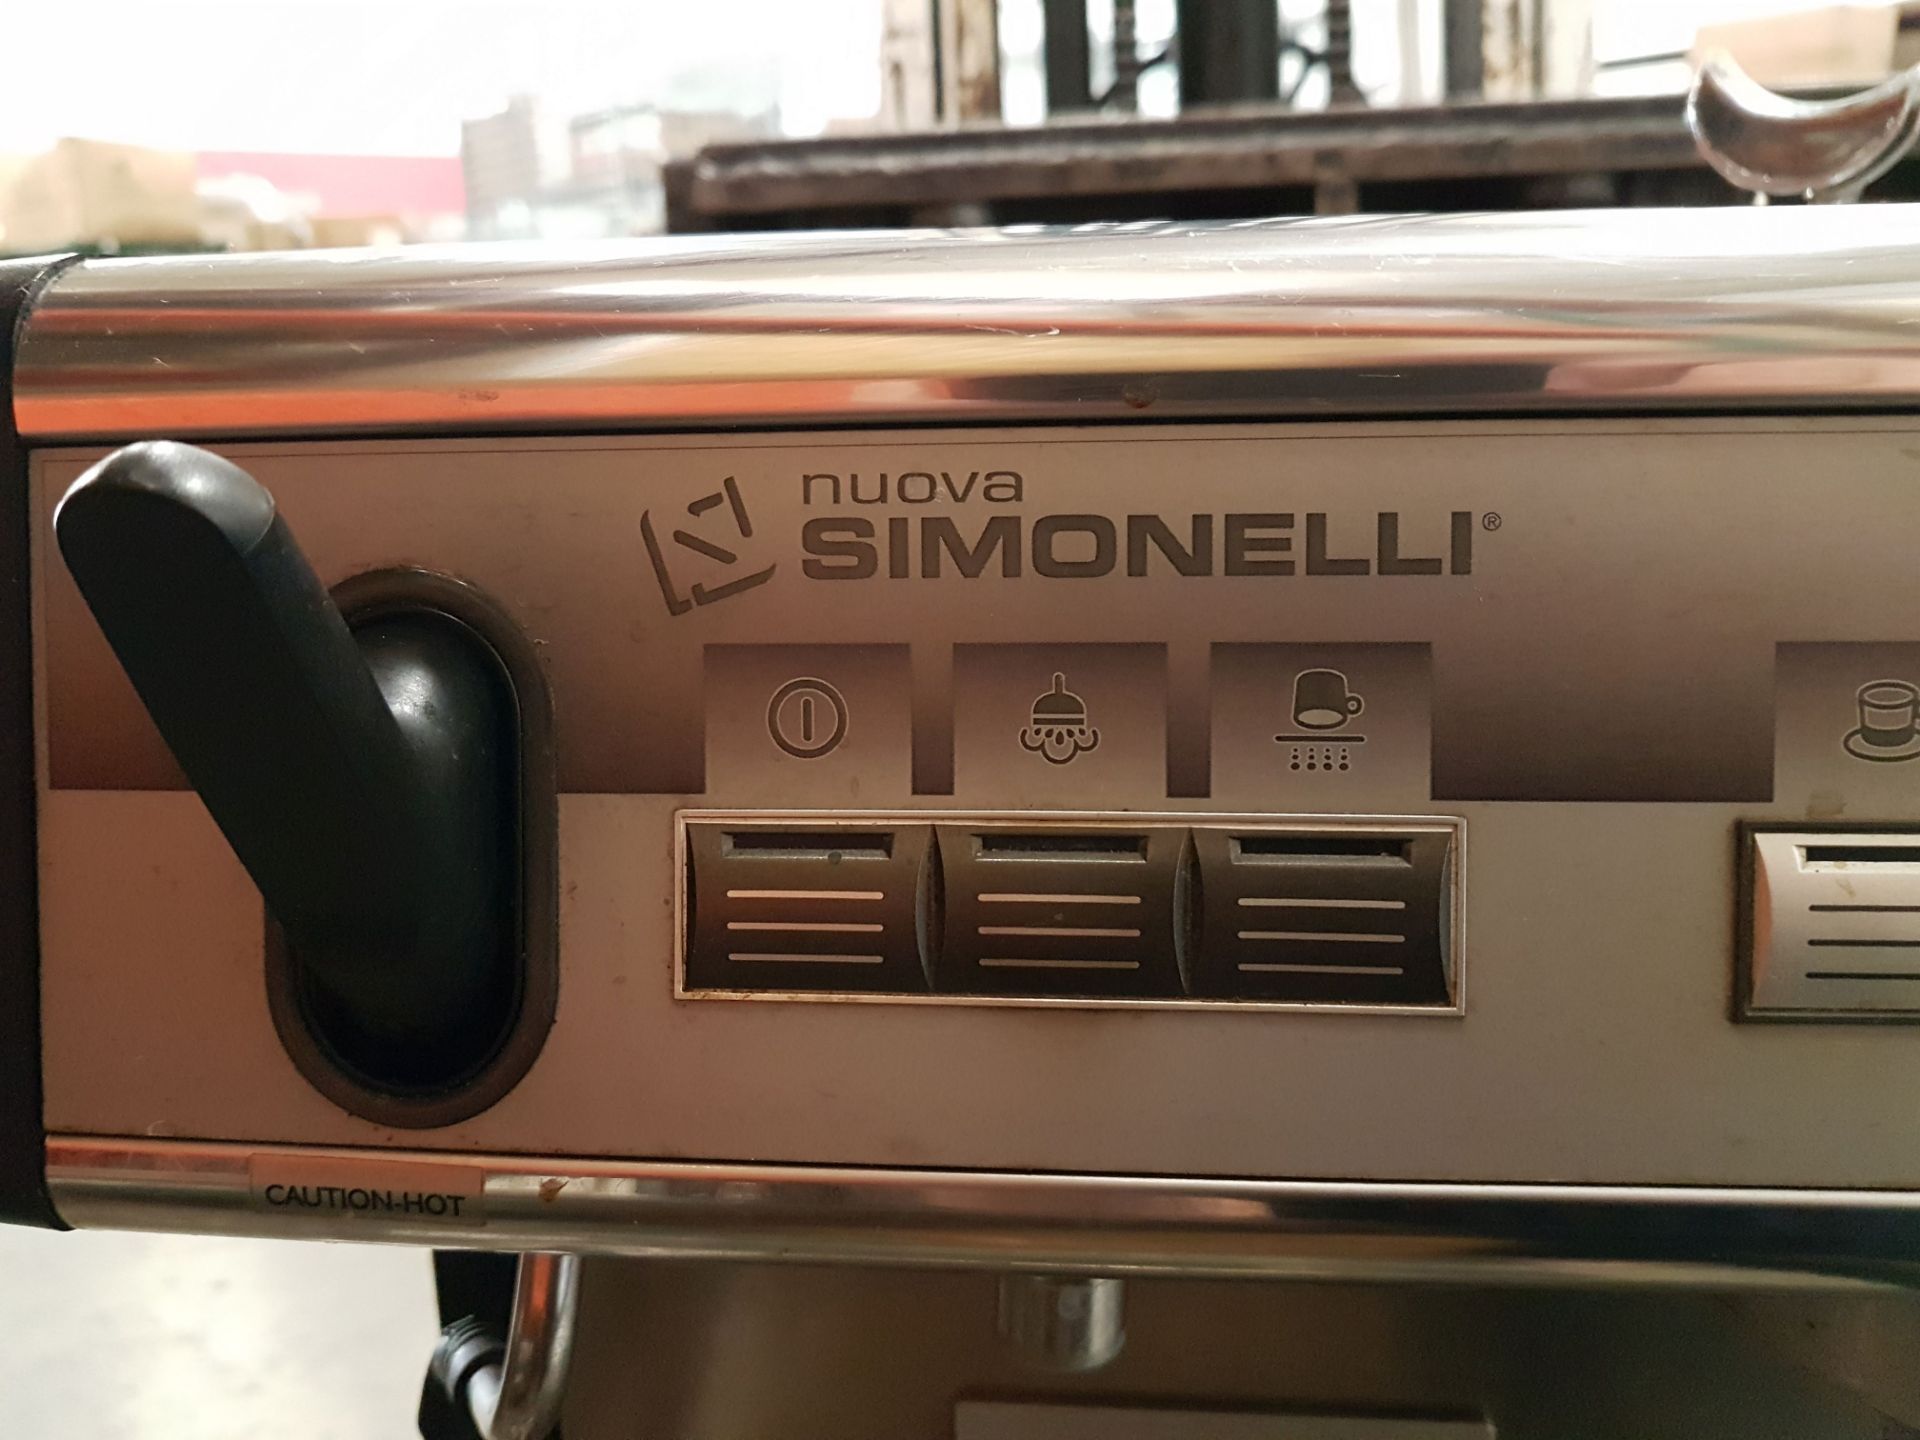 Nuova Simonelli Appia 2 Head Espresso Machine - Image 2 of 5